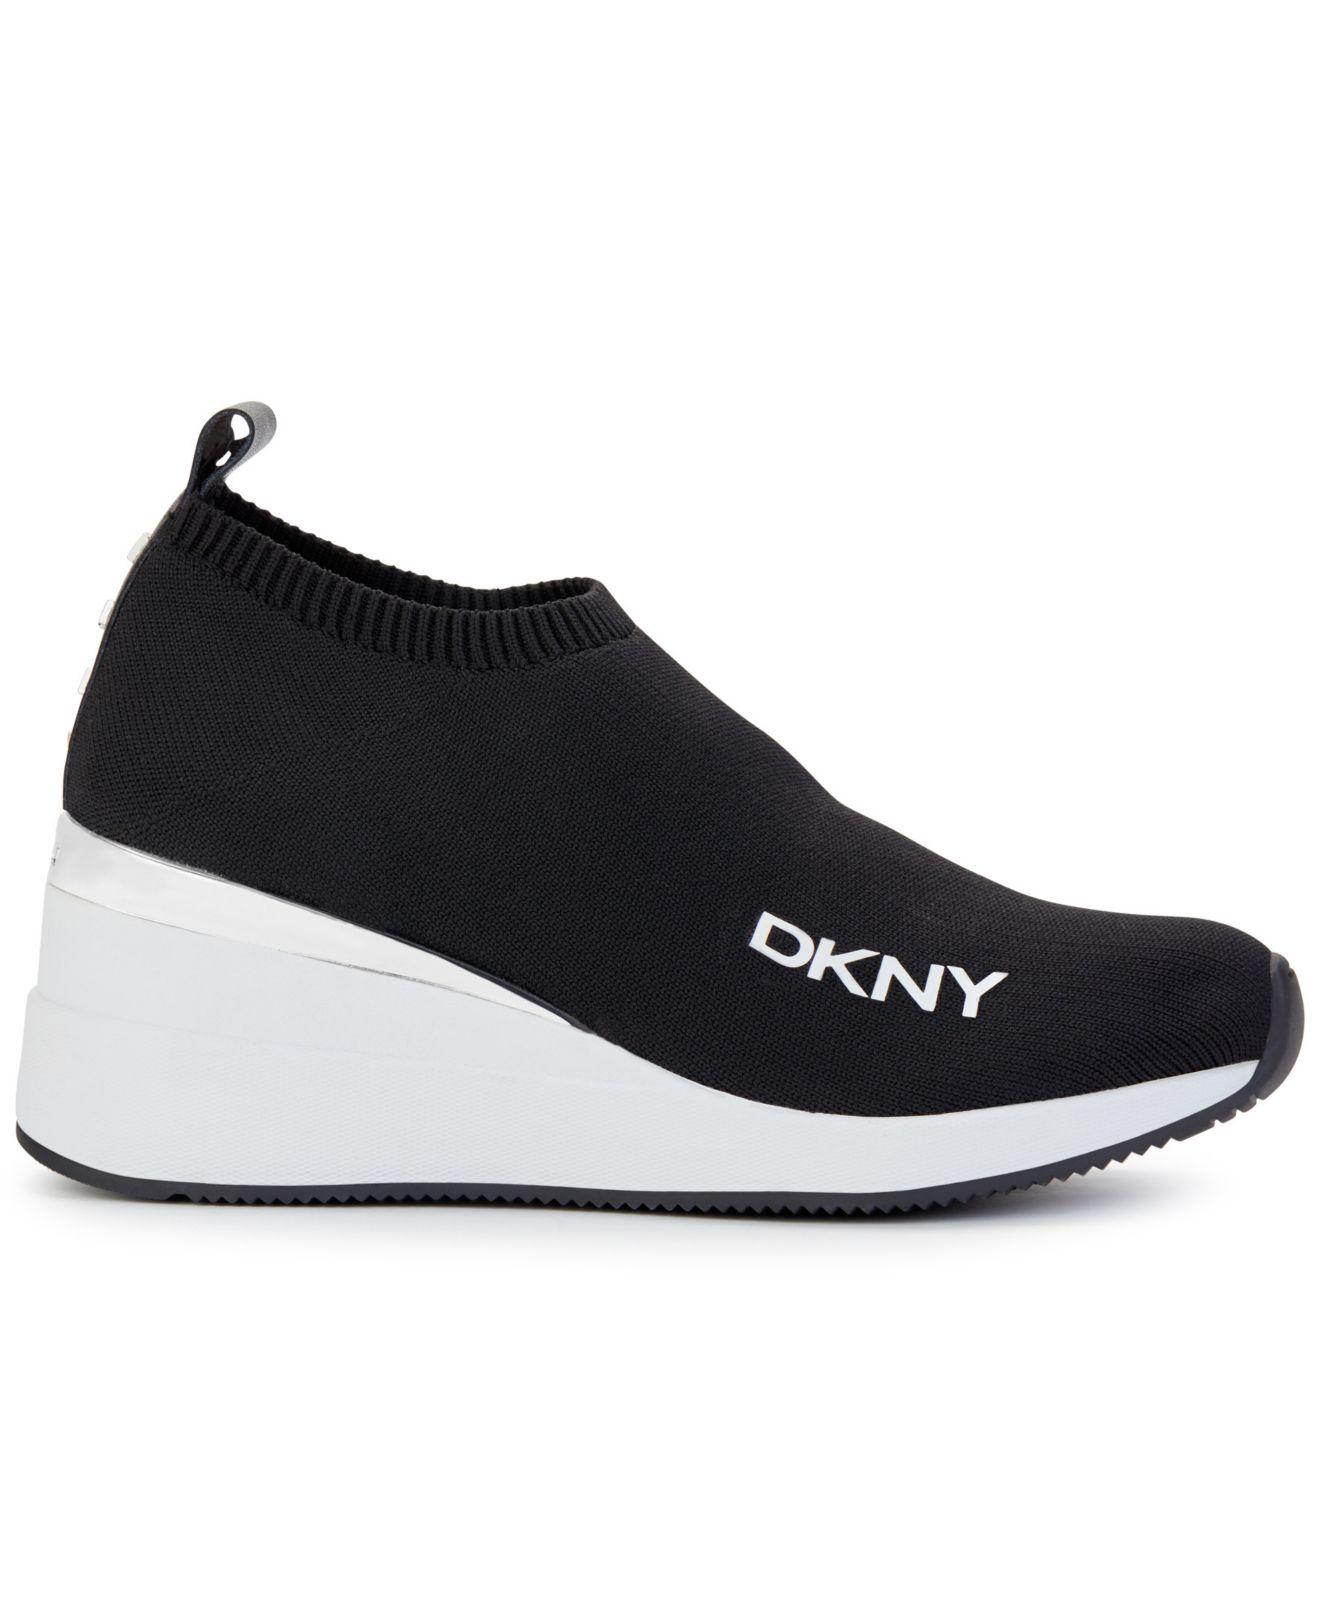 DKNY Parks Slip-on Wedge Sneakers in Black | Lyst